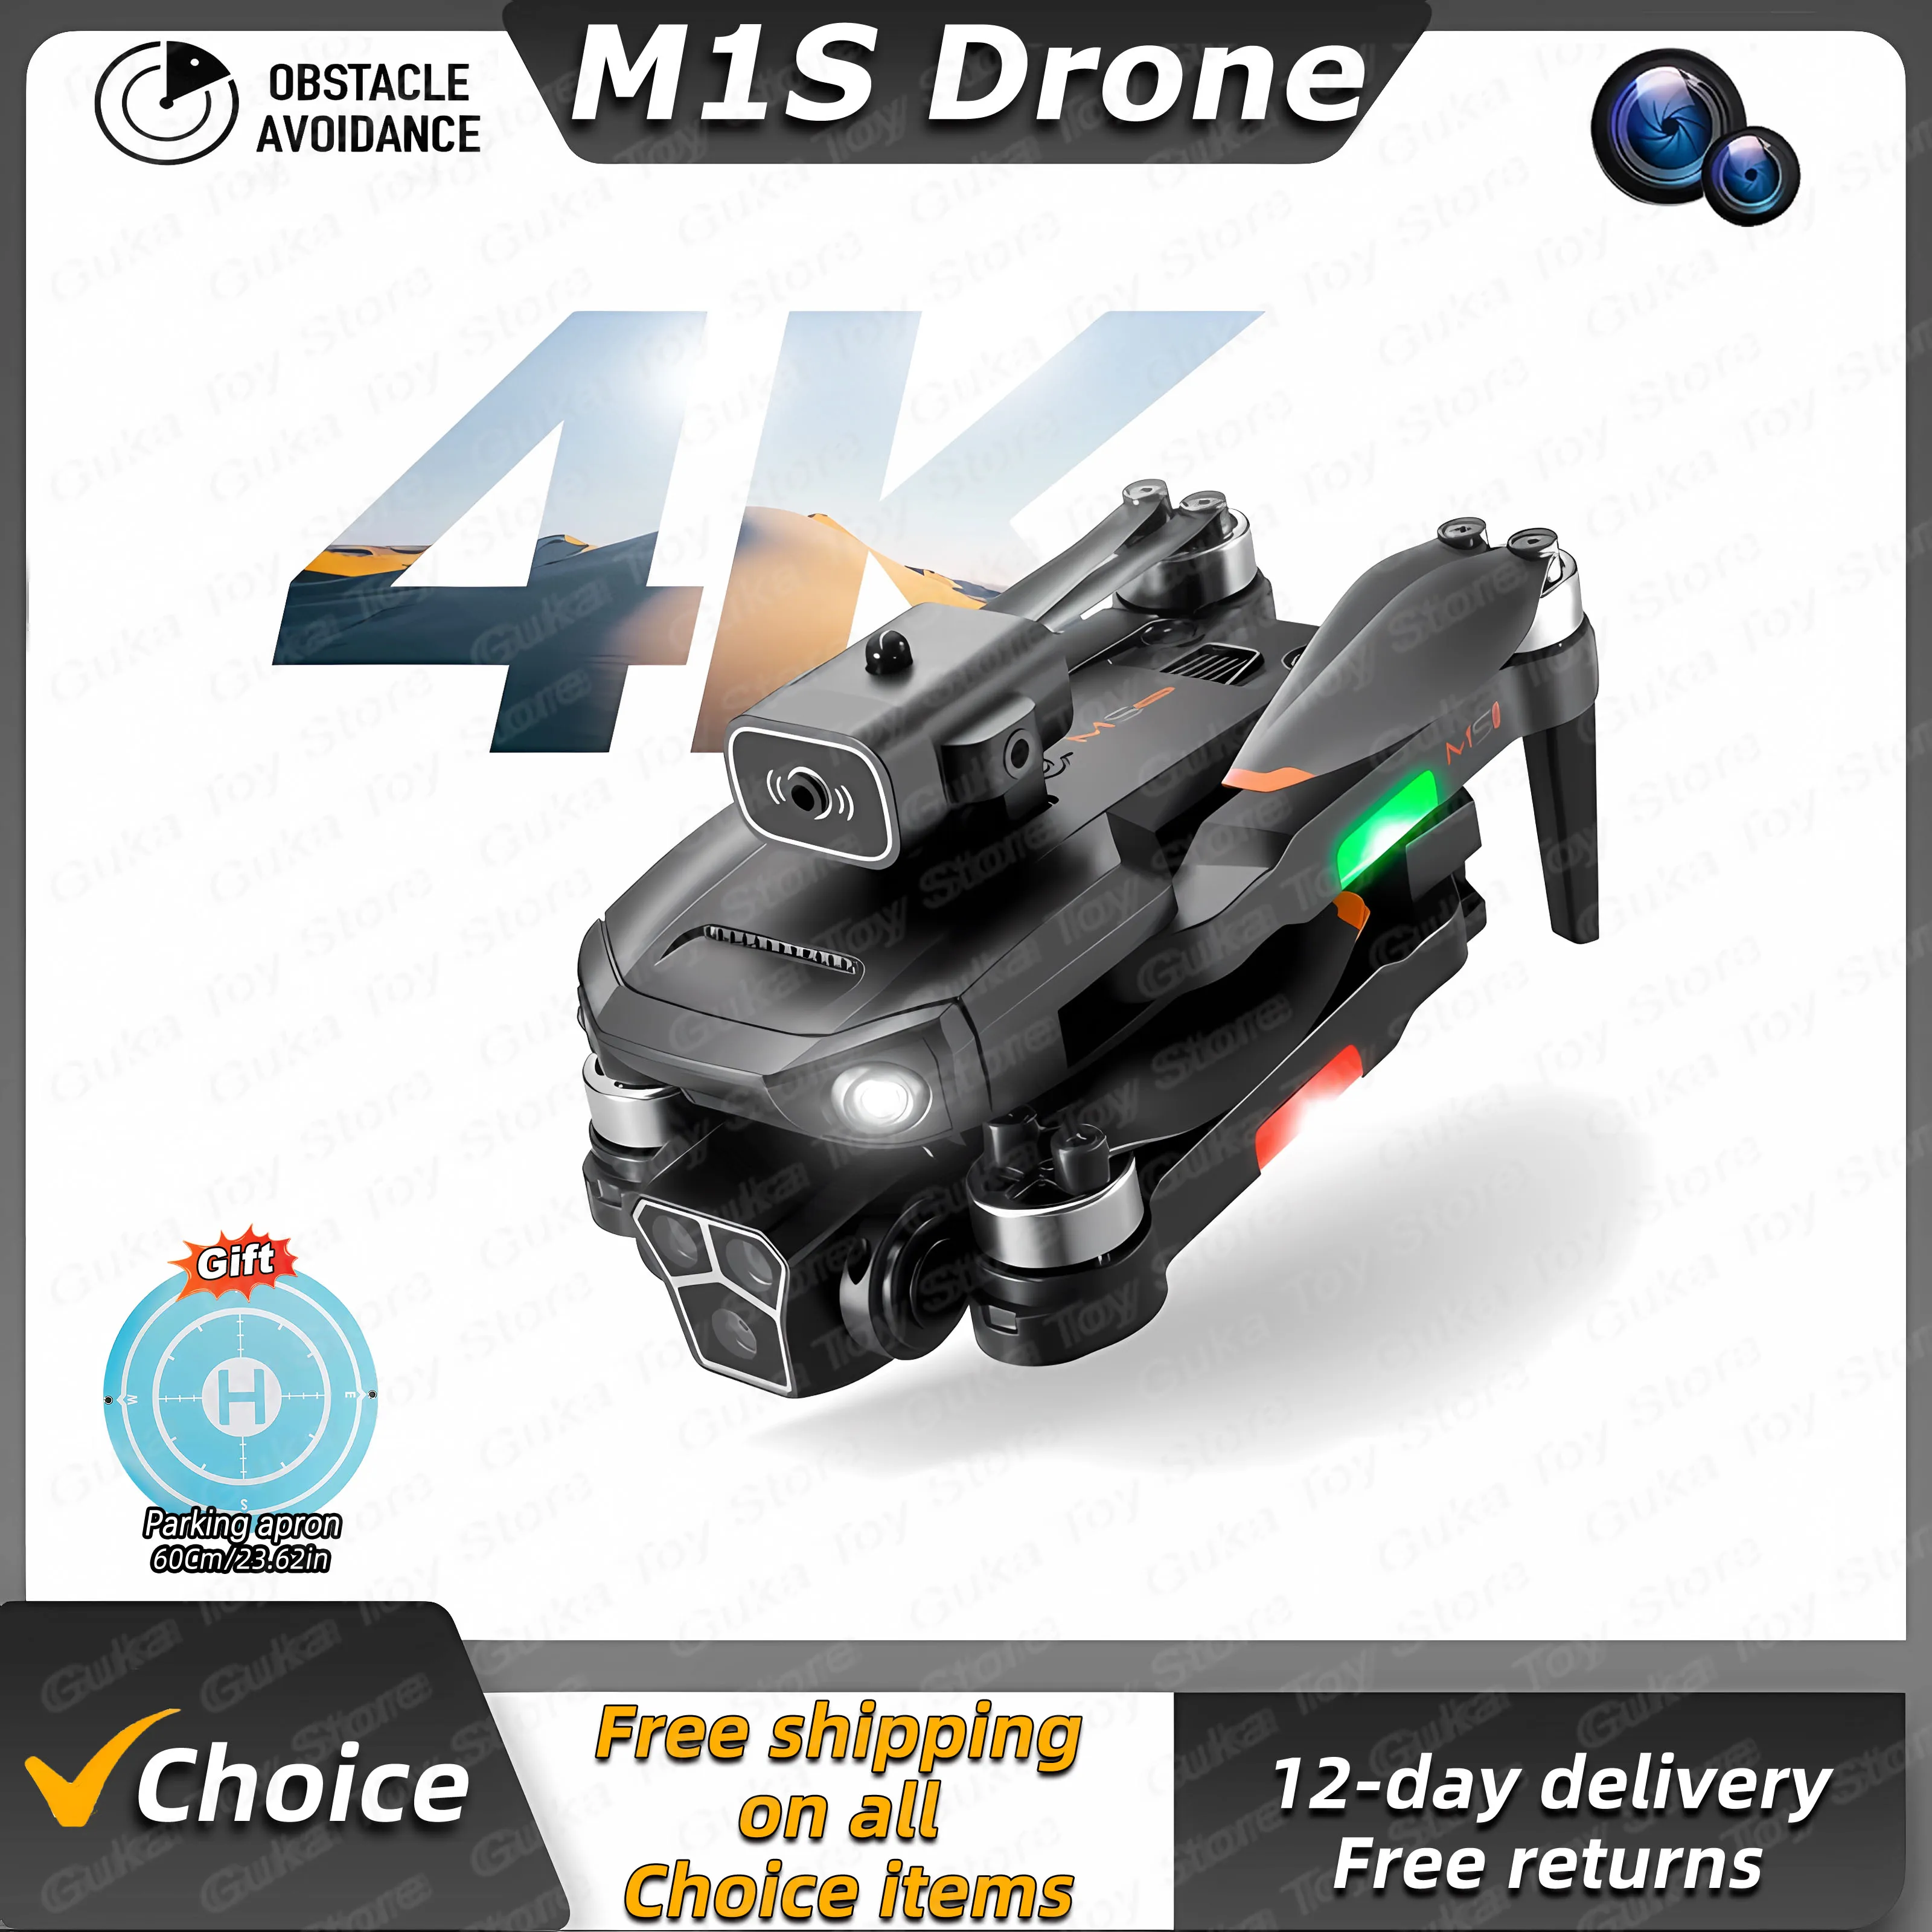 drone 8k